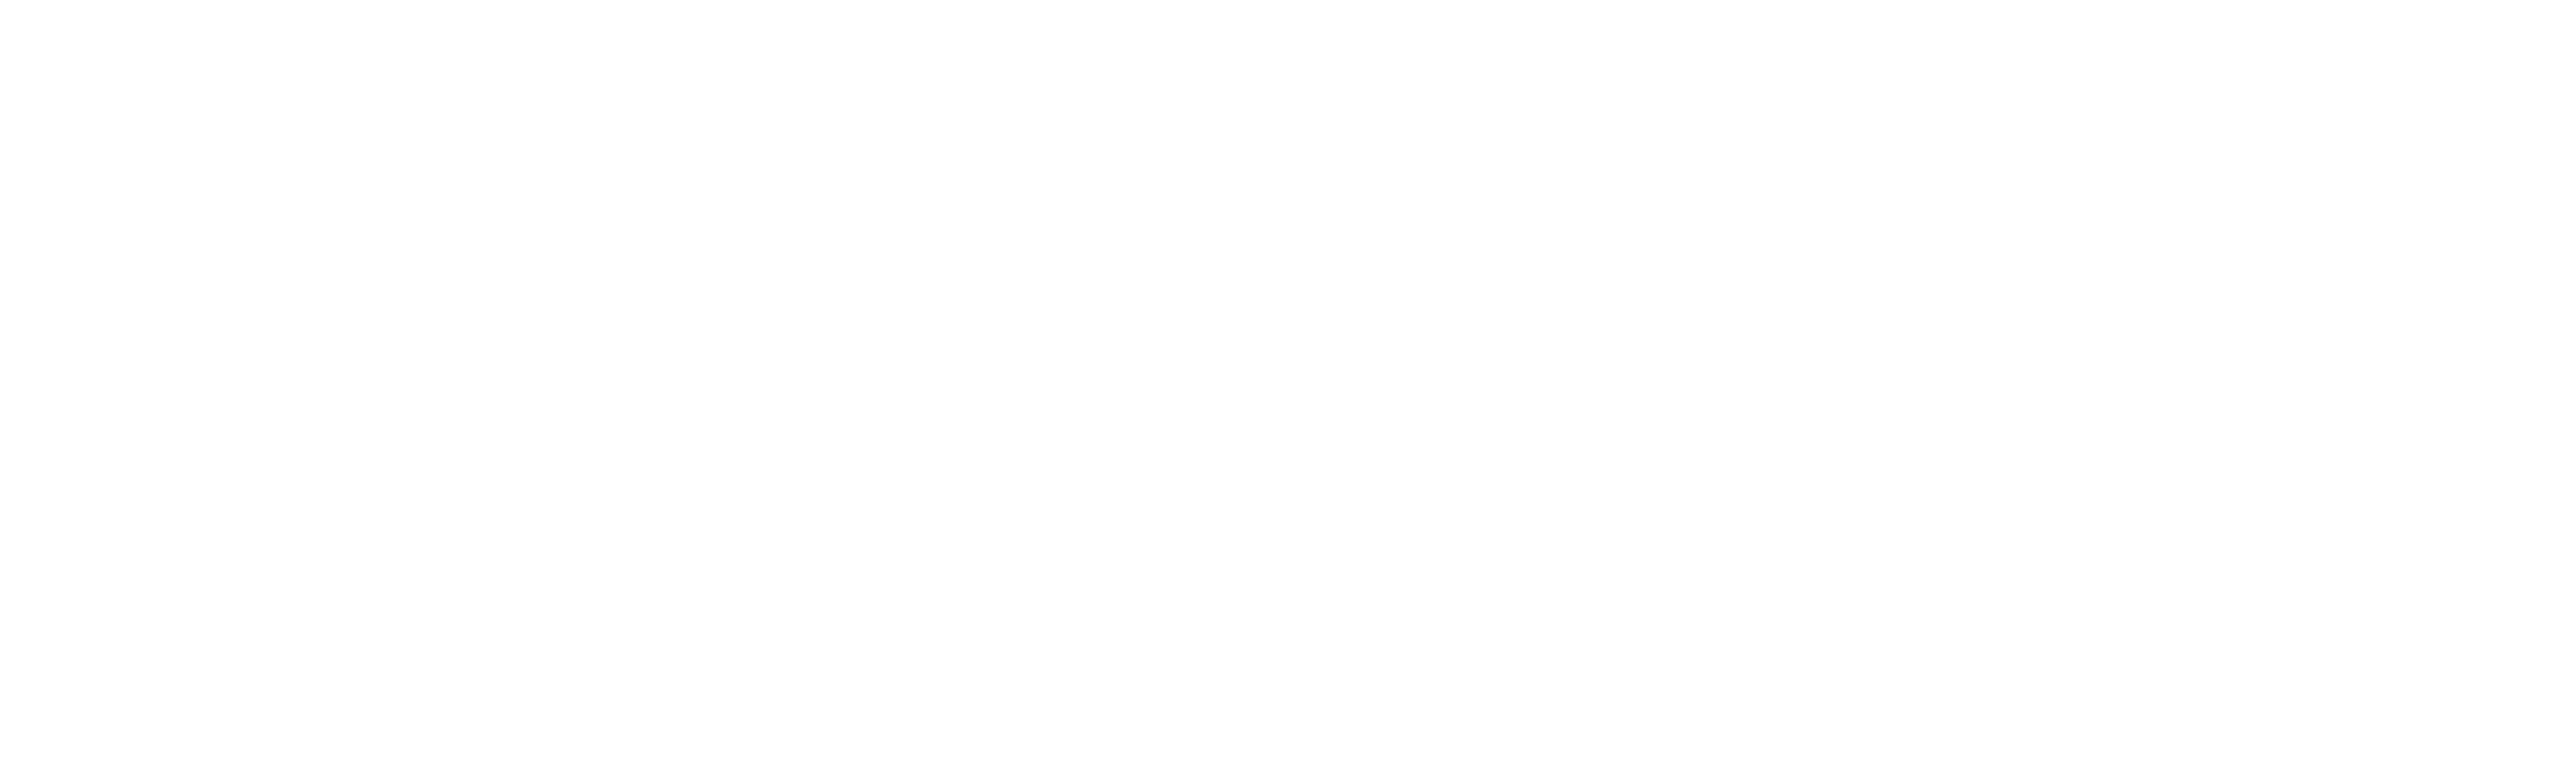 EFPR_Group_logo_1C_white.png